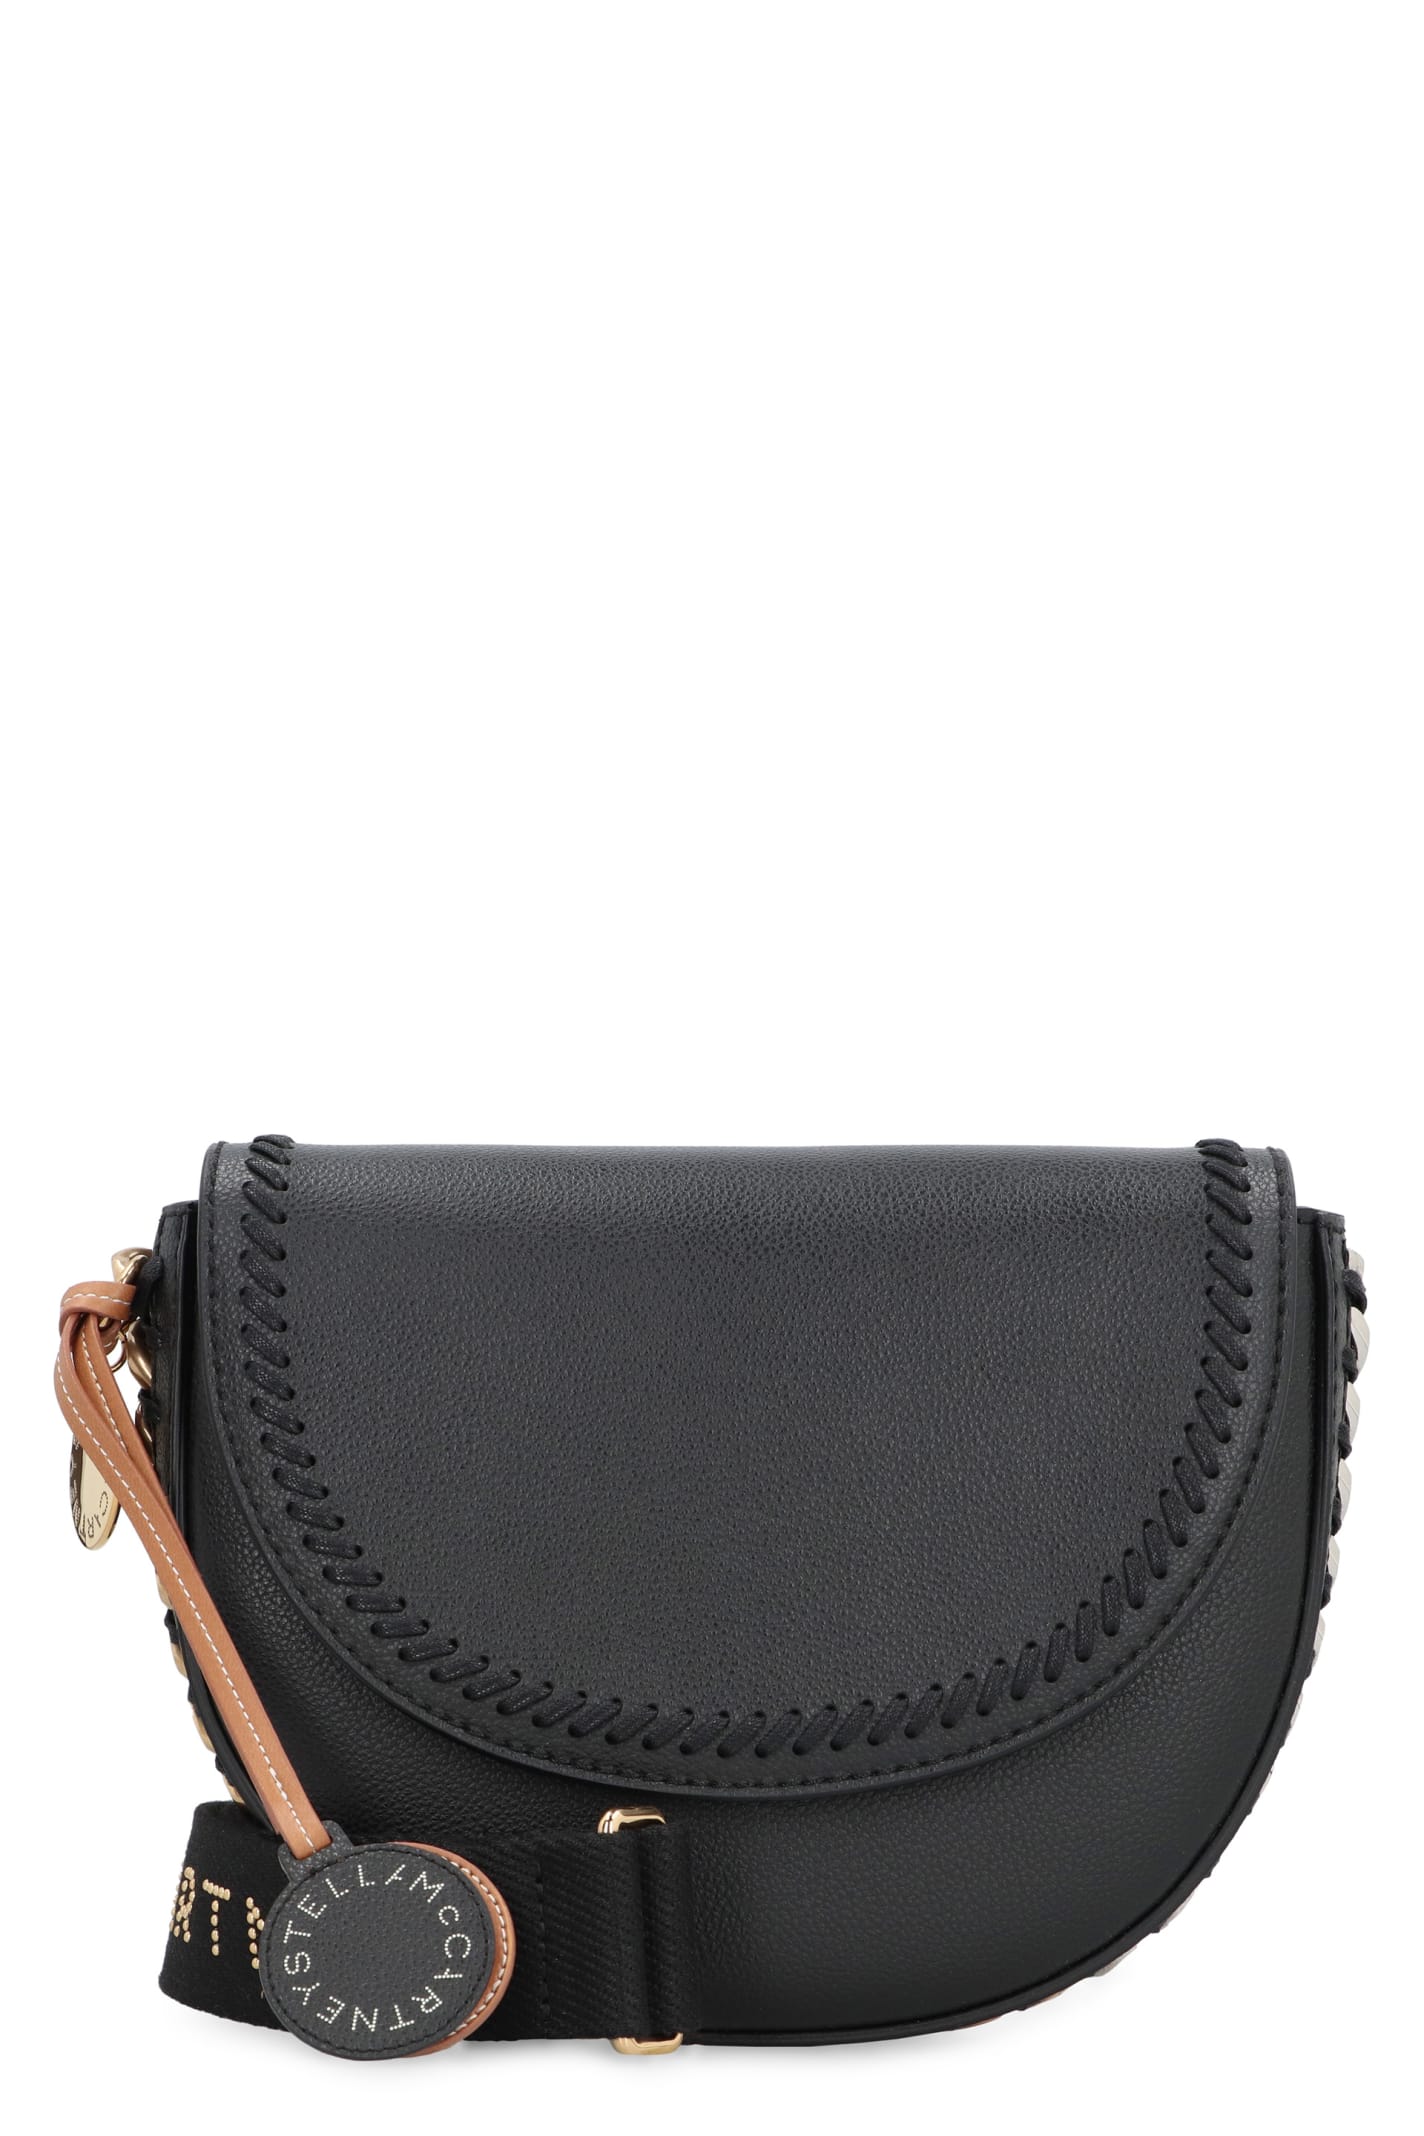 Stella McCartney Frayme Vegan Leather Shoulder Bag